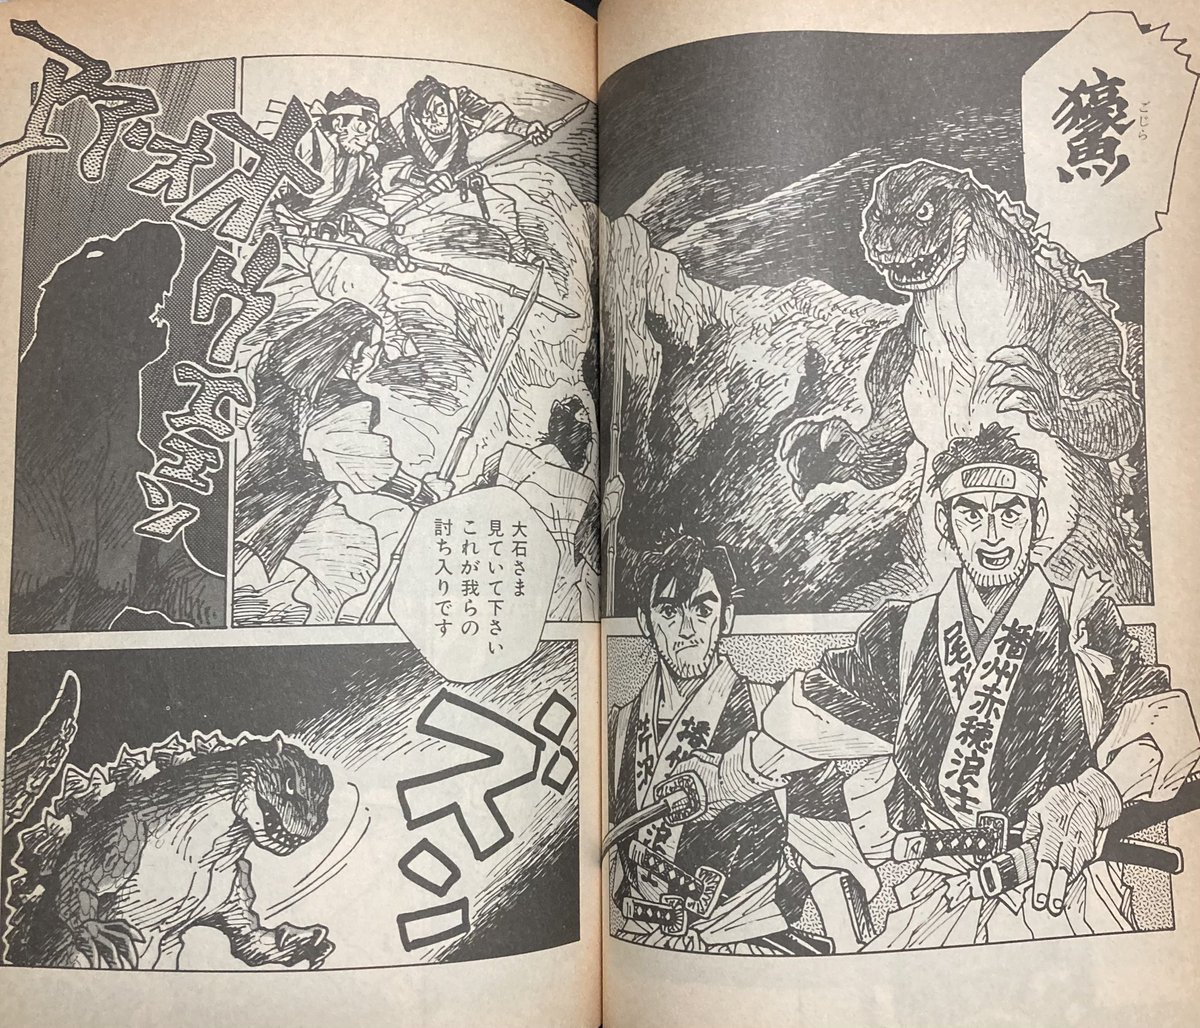 江戸時代ゴジラ、長いゴジラの歴史の中に実は存在してるんですよ。東宝公認(公式)のゴジラアンソロジー本「THE ゴジラCOMIC」の中に、江戸時代が舞台になっている漫画作品があるの……。